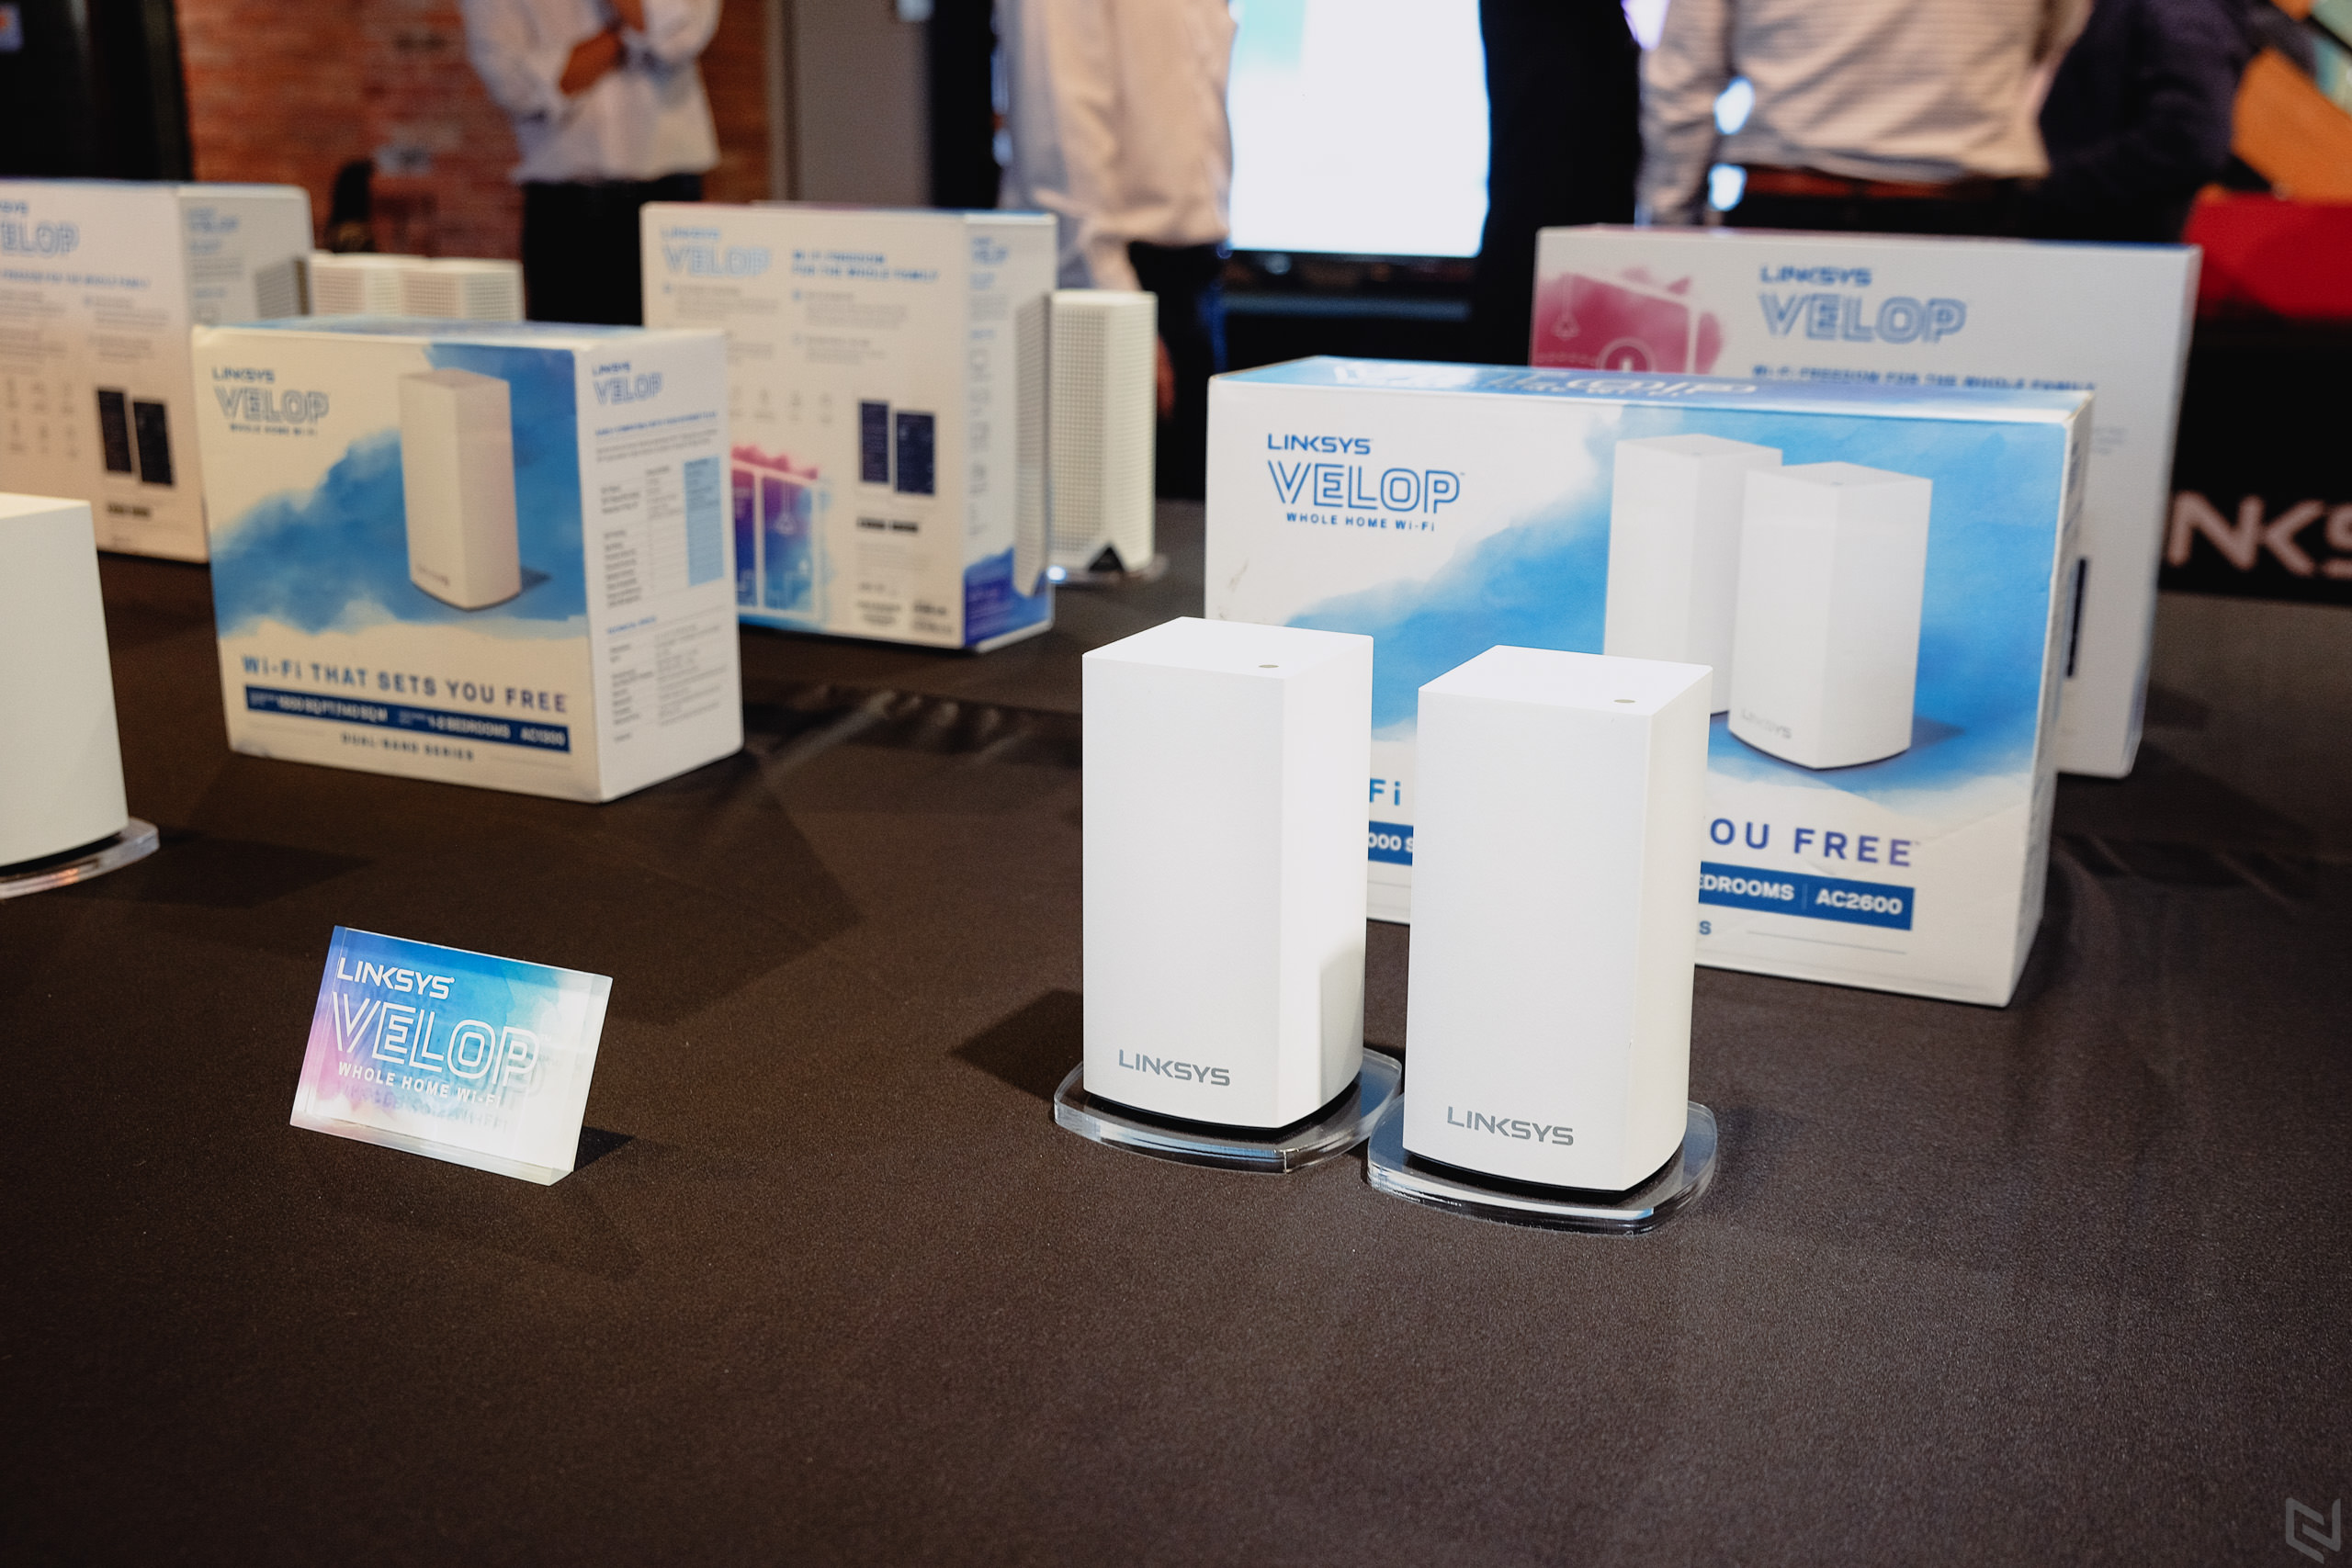 Linksys ra mắt Velop – hệ thống Whole home WiFi công nghệ "mesh" thông minh